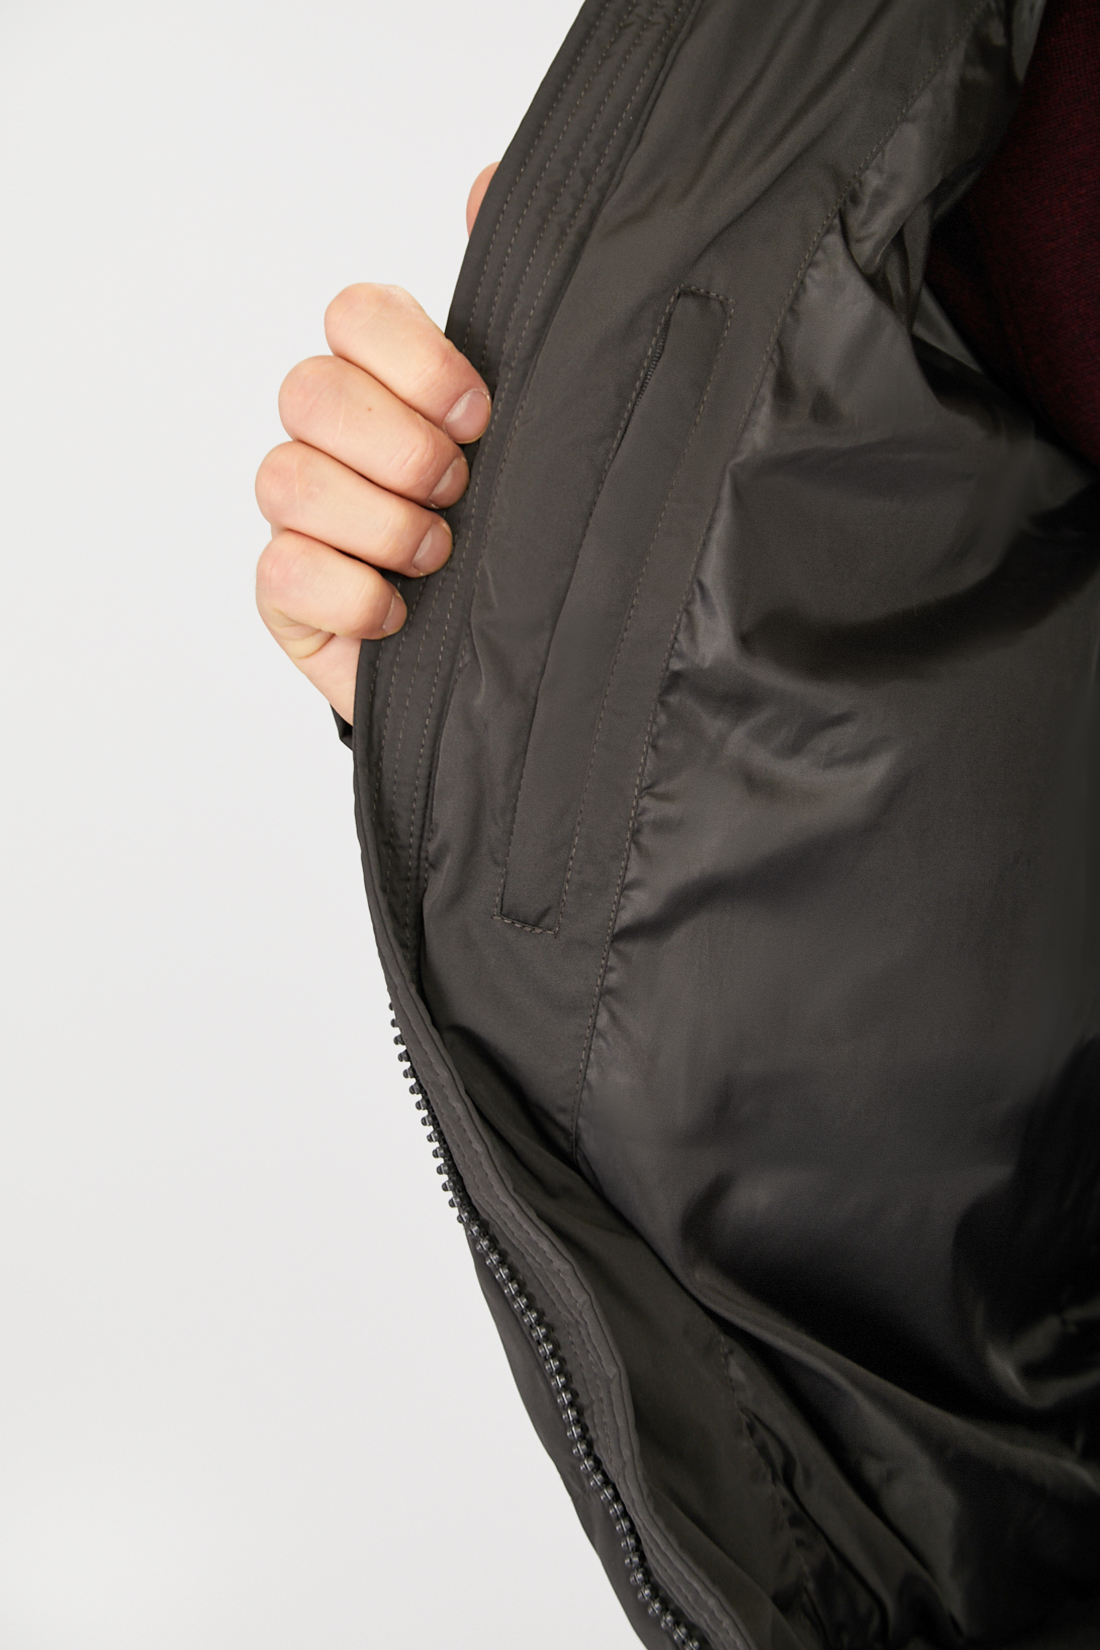 Куртка (Эко пух) (арт. baon B541502), размер M, цвет зеленый Куртка (Эко пух) (арт. baon B541502) - фото 3